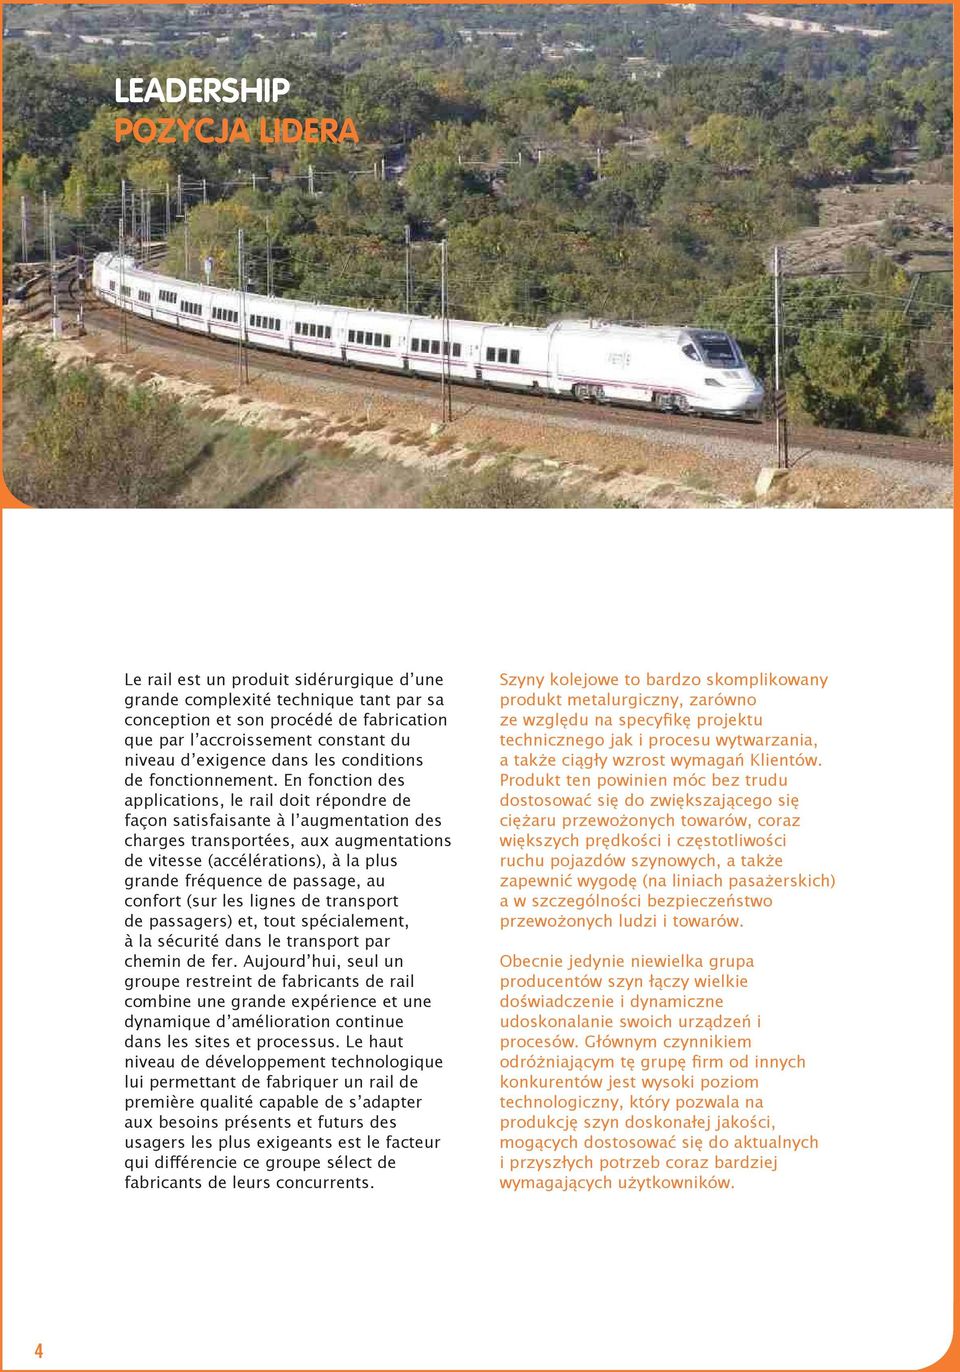 En fonction des applications, le rail doit répondre de façon satisfaisante à l augmentation des charges transportées, aux augmentations de vitesse (accélérations), à la plus grande fréquence de